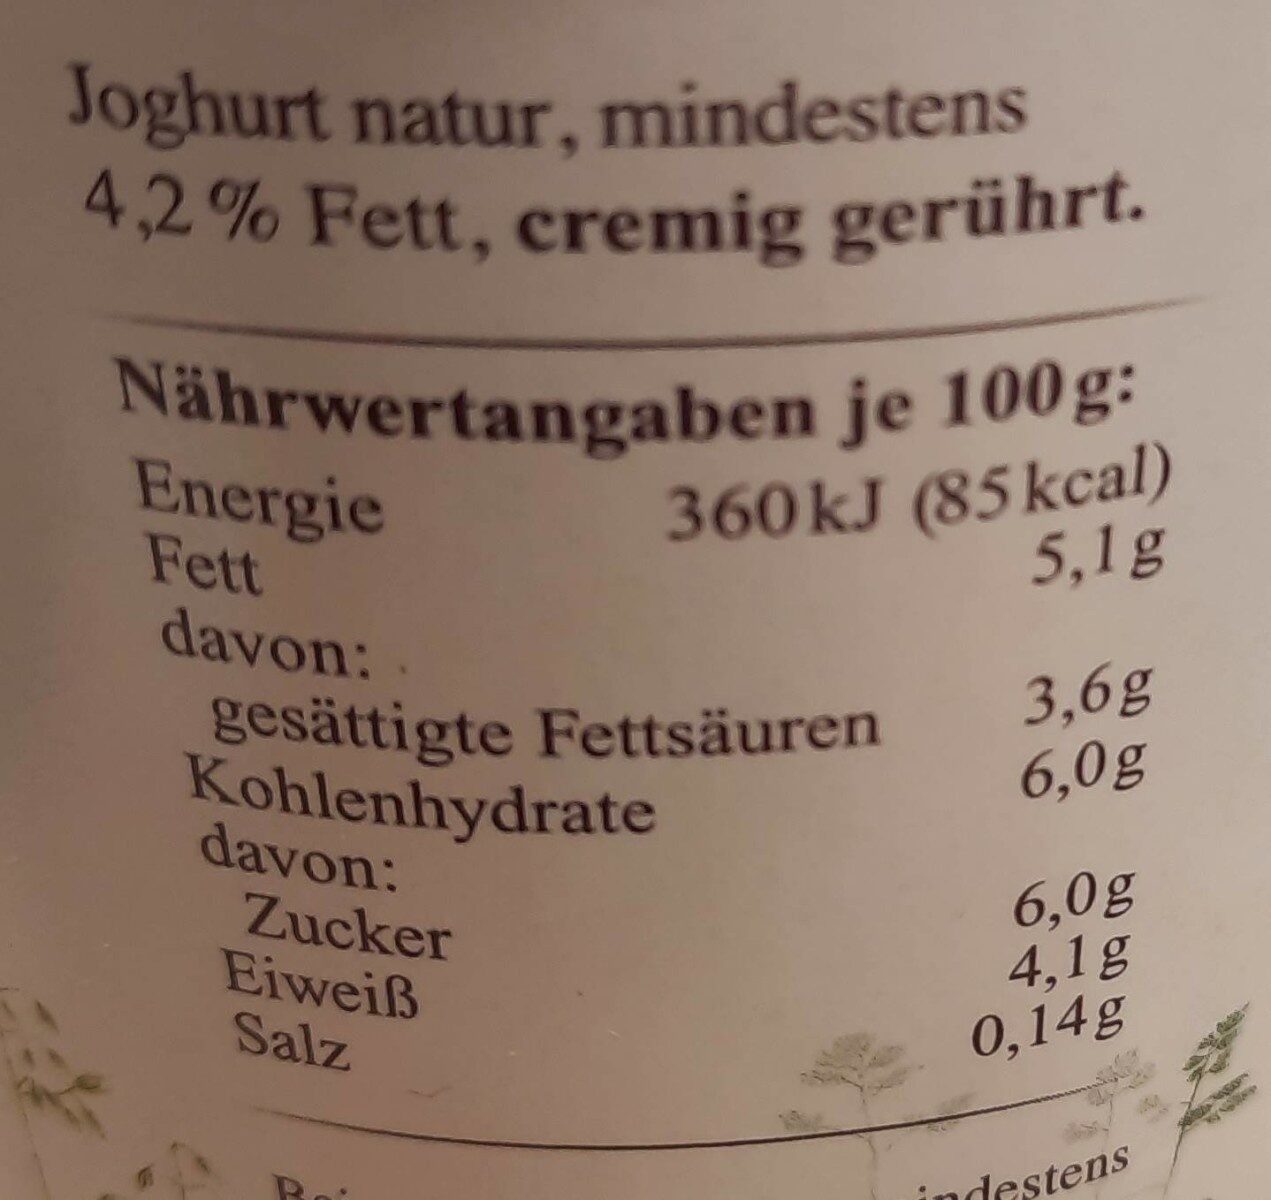 Joghurt natur 4,2% Fett - Nutrition facts - de